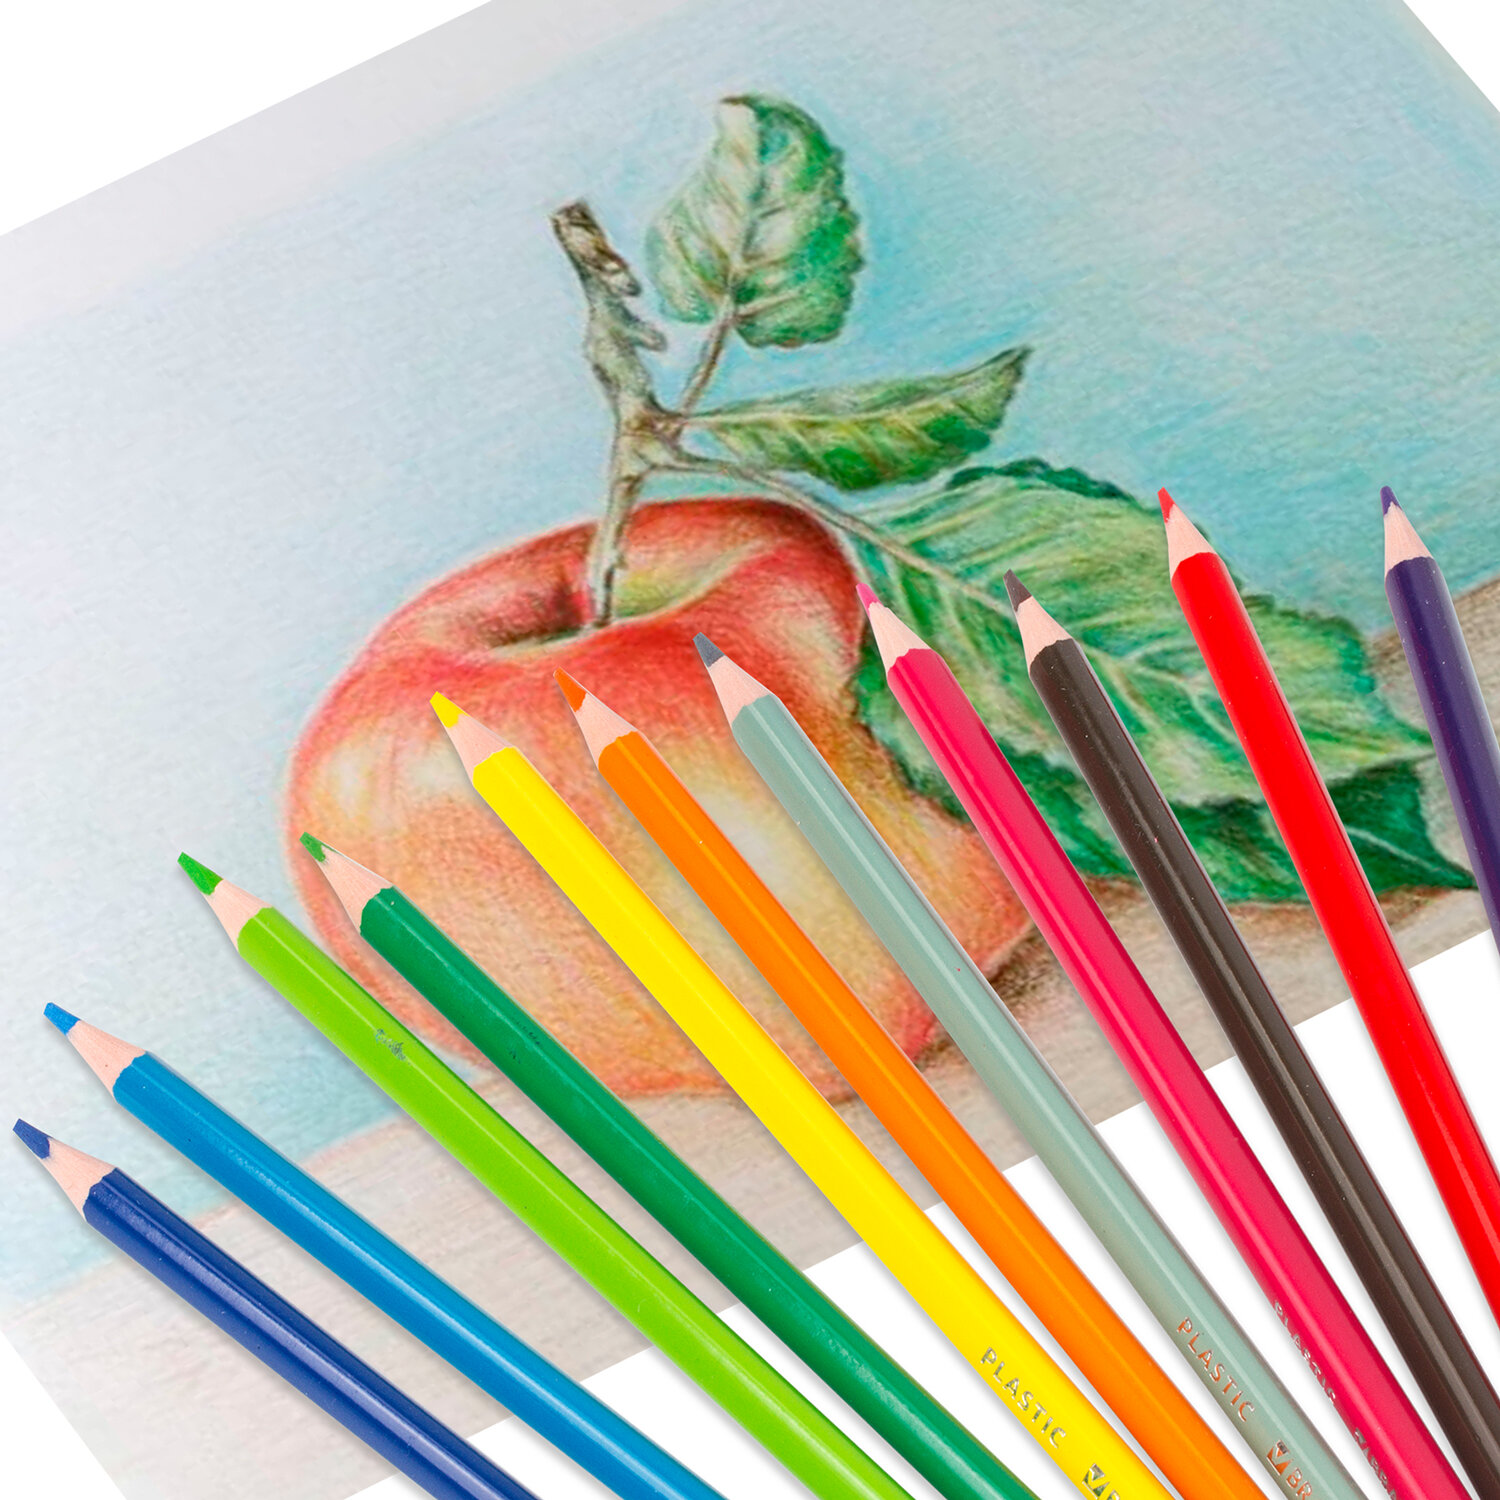 Карандаши цветные пластиковые BRAUBERG PREMIUM, 12 цветов, трехгранные, грифель мягкий 3 мм, 181661